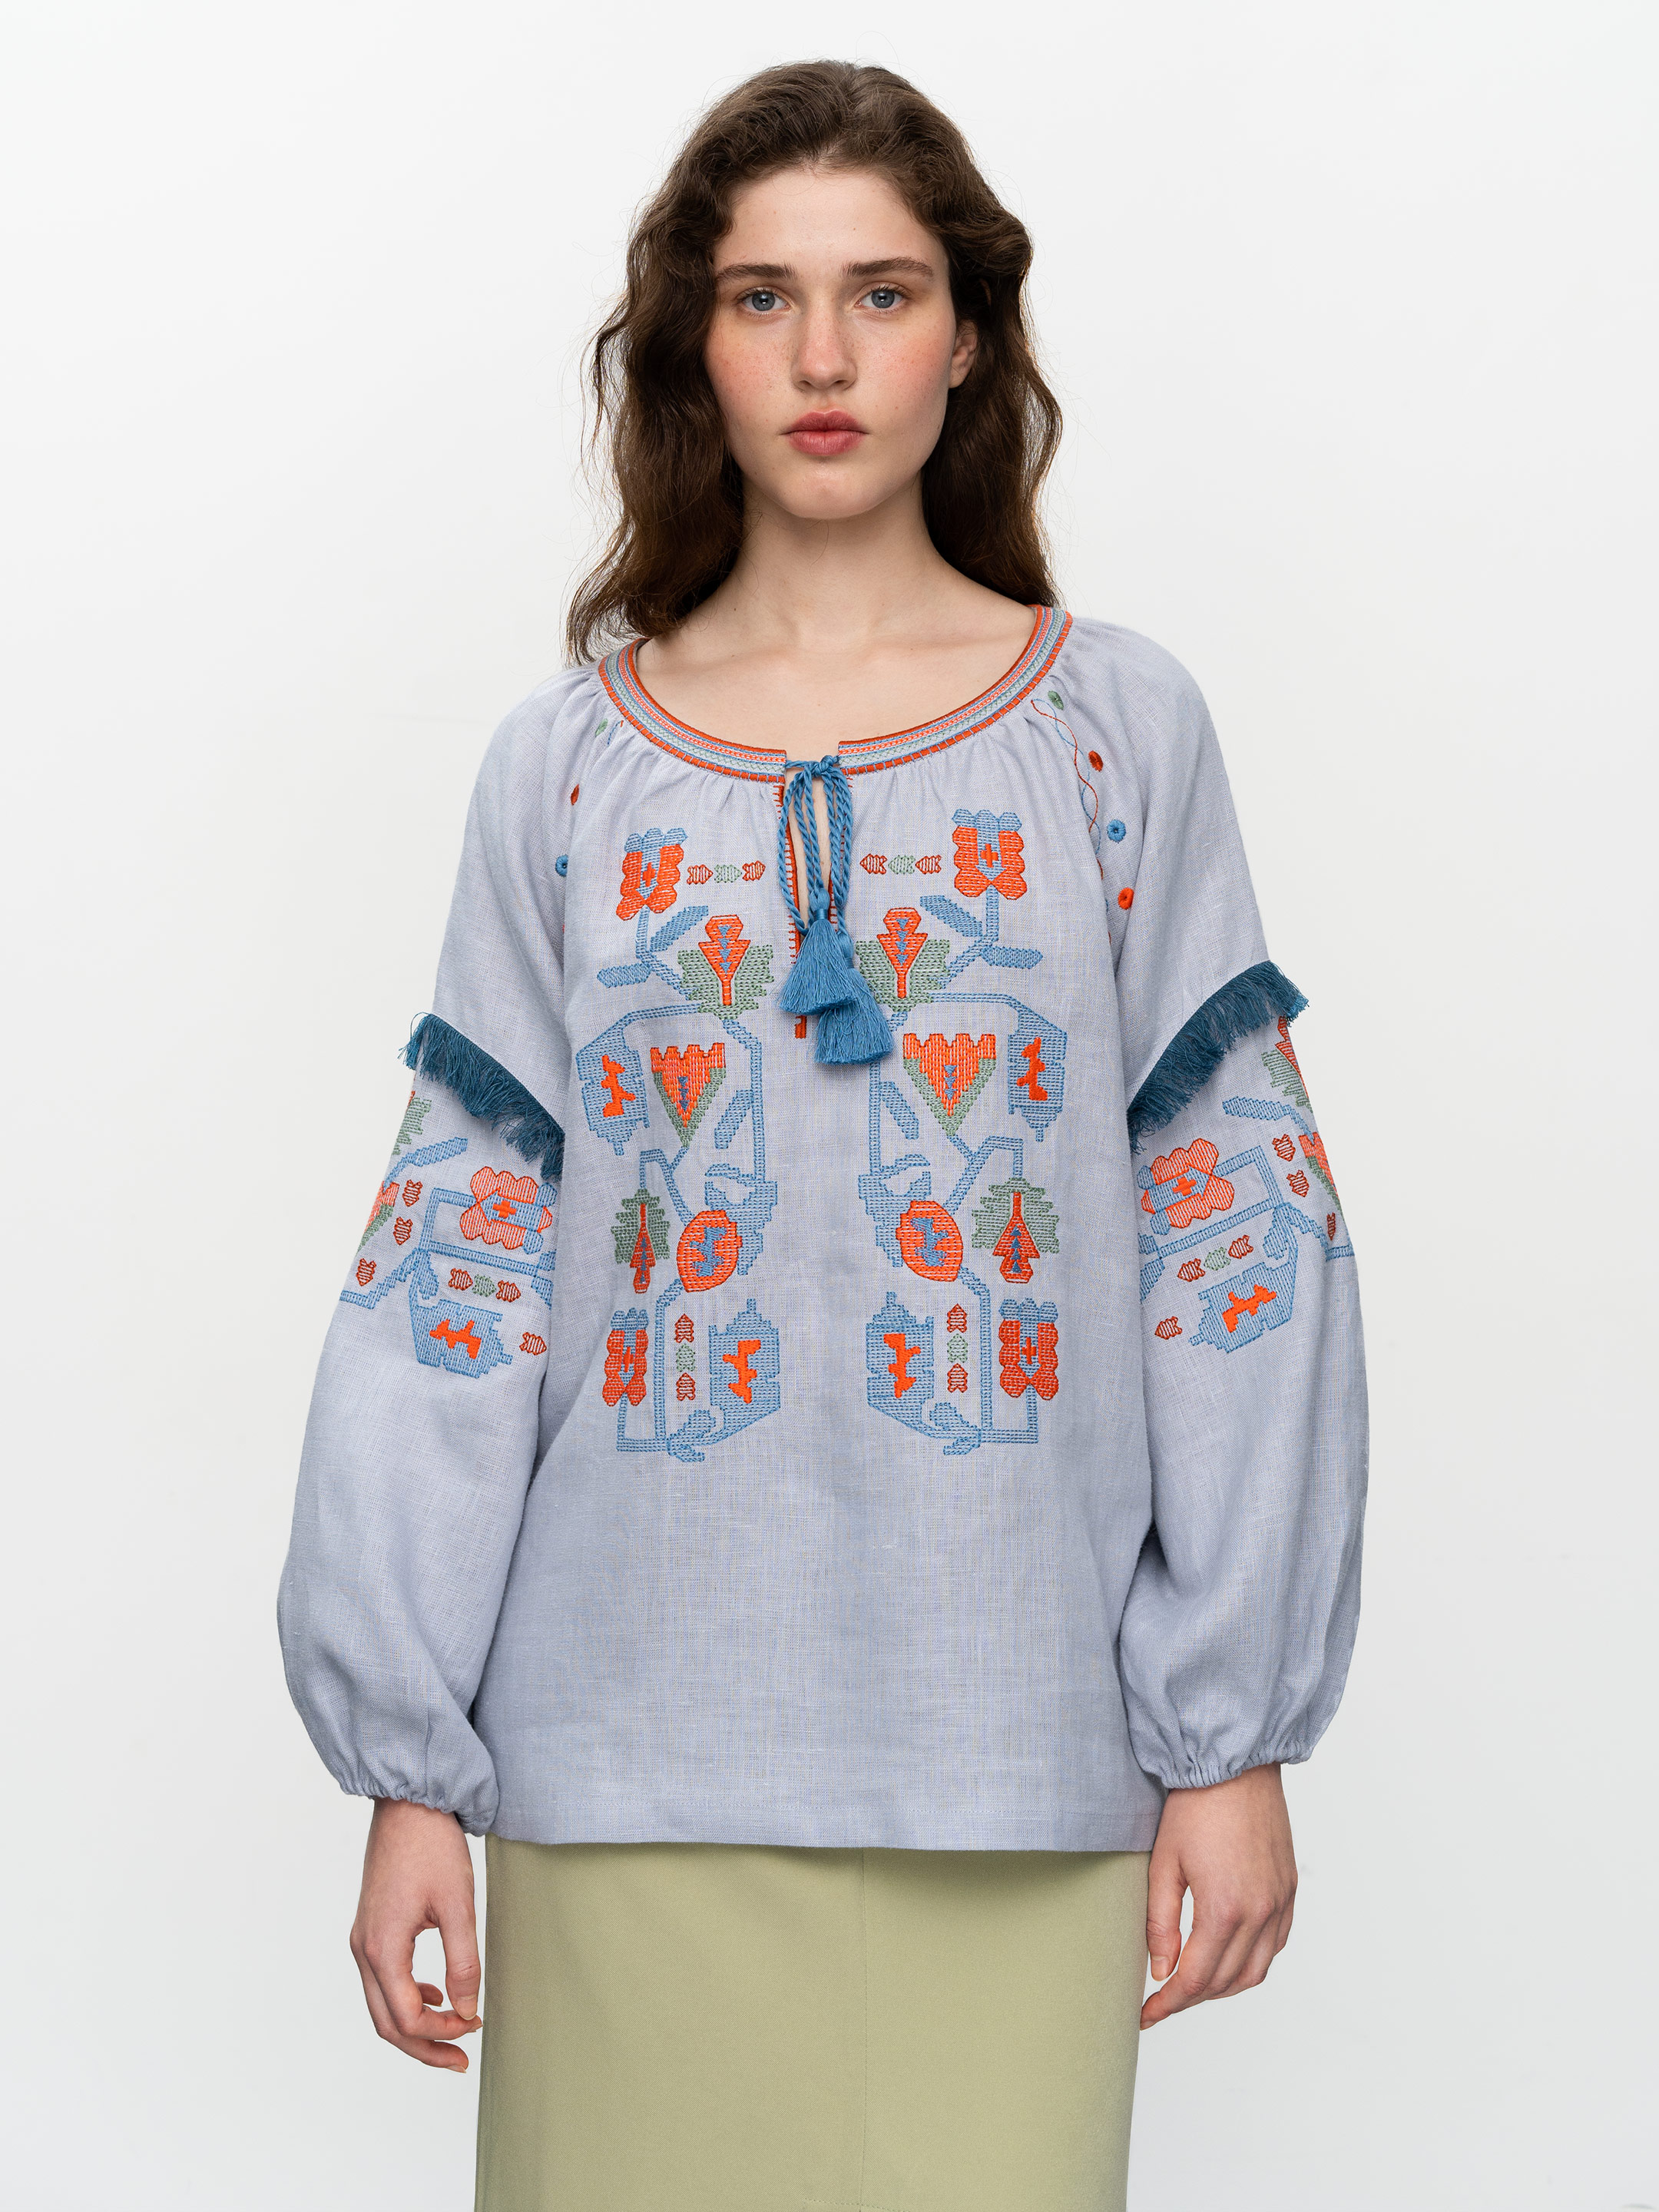 Women's embroidered shirt with fringe Oksamyt Blue - photo 1